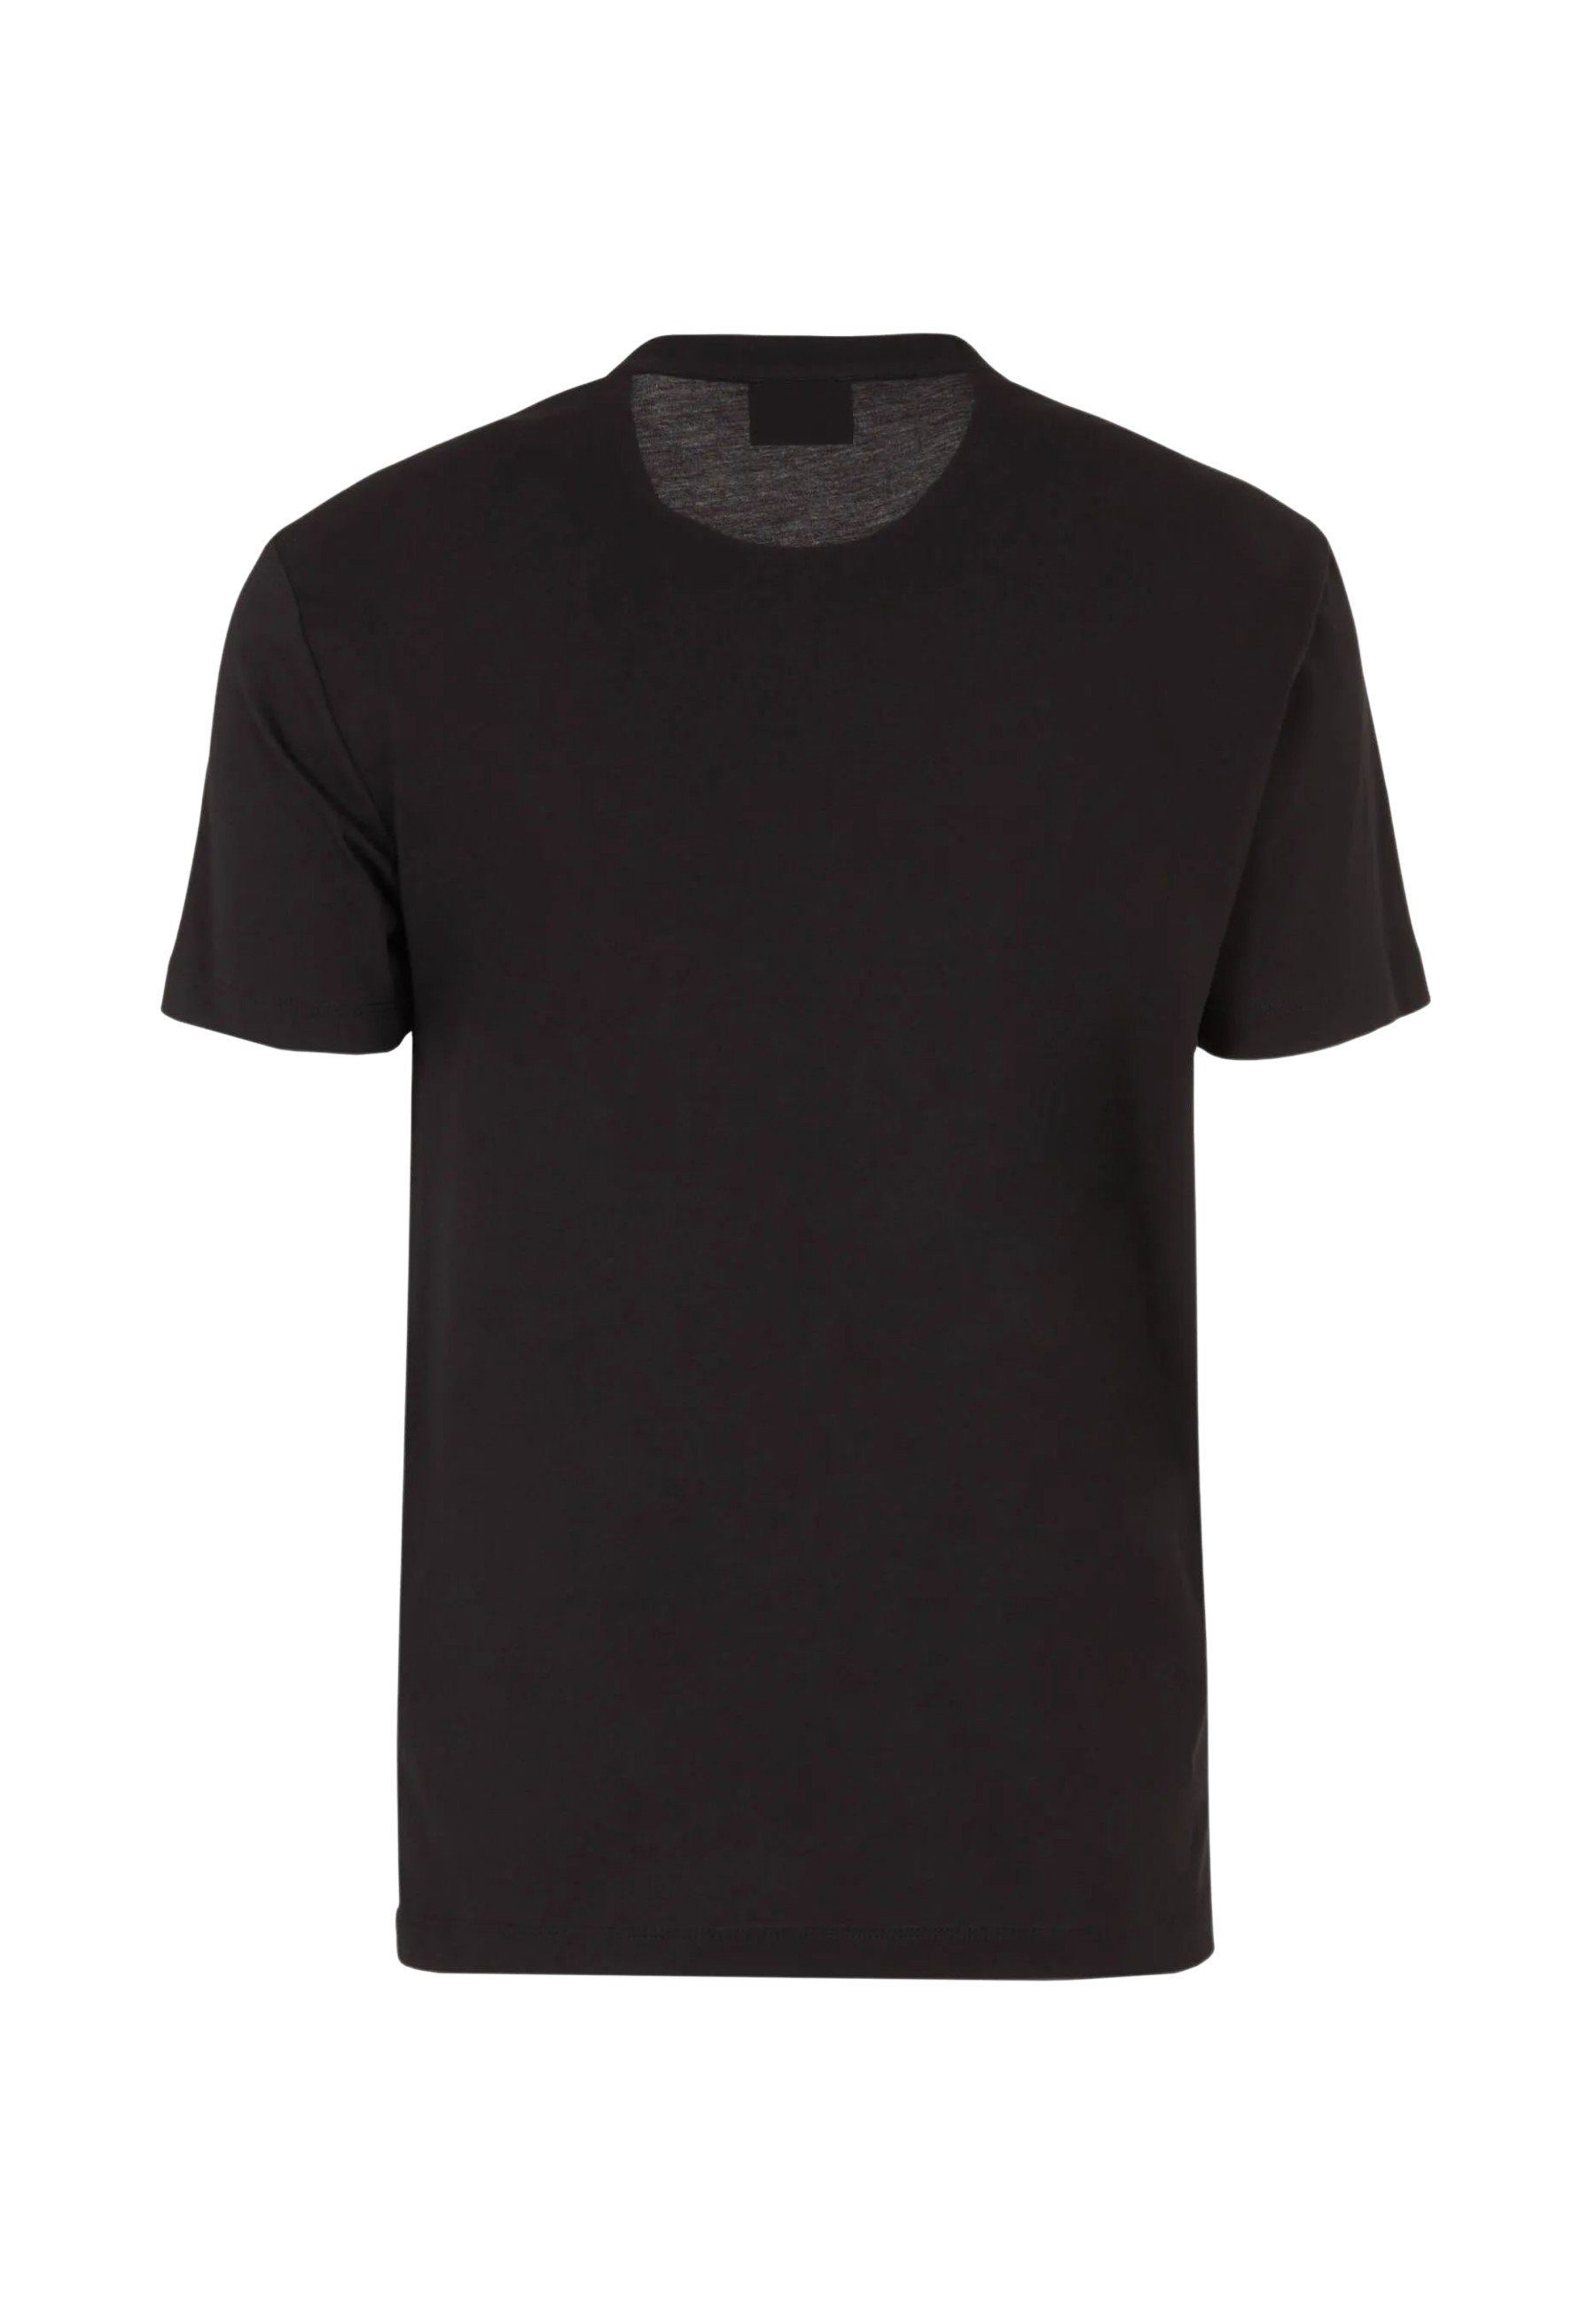 Emporio T-Shirt Tee mit schwarz Gold Armani Label Rundhalsausschnitt (1-tlg) Shirt